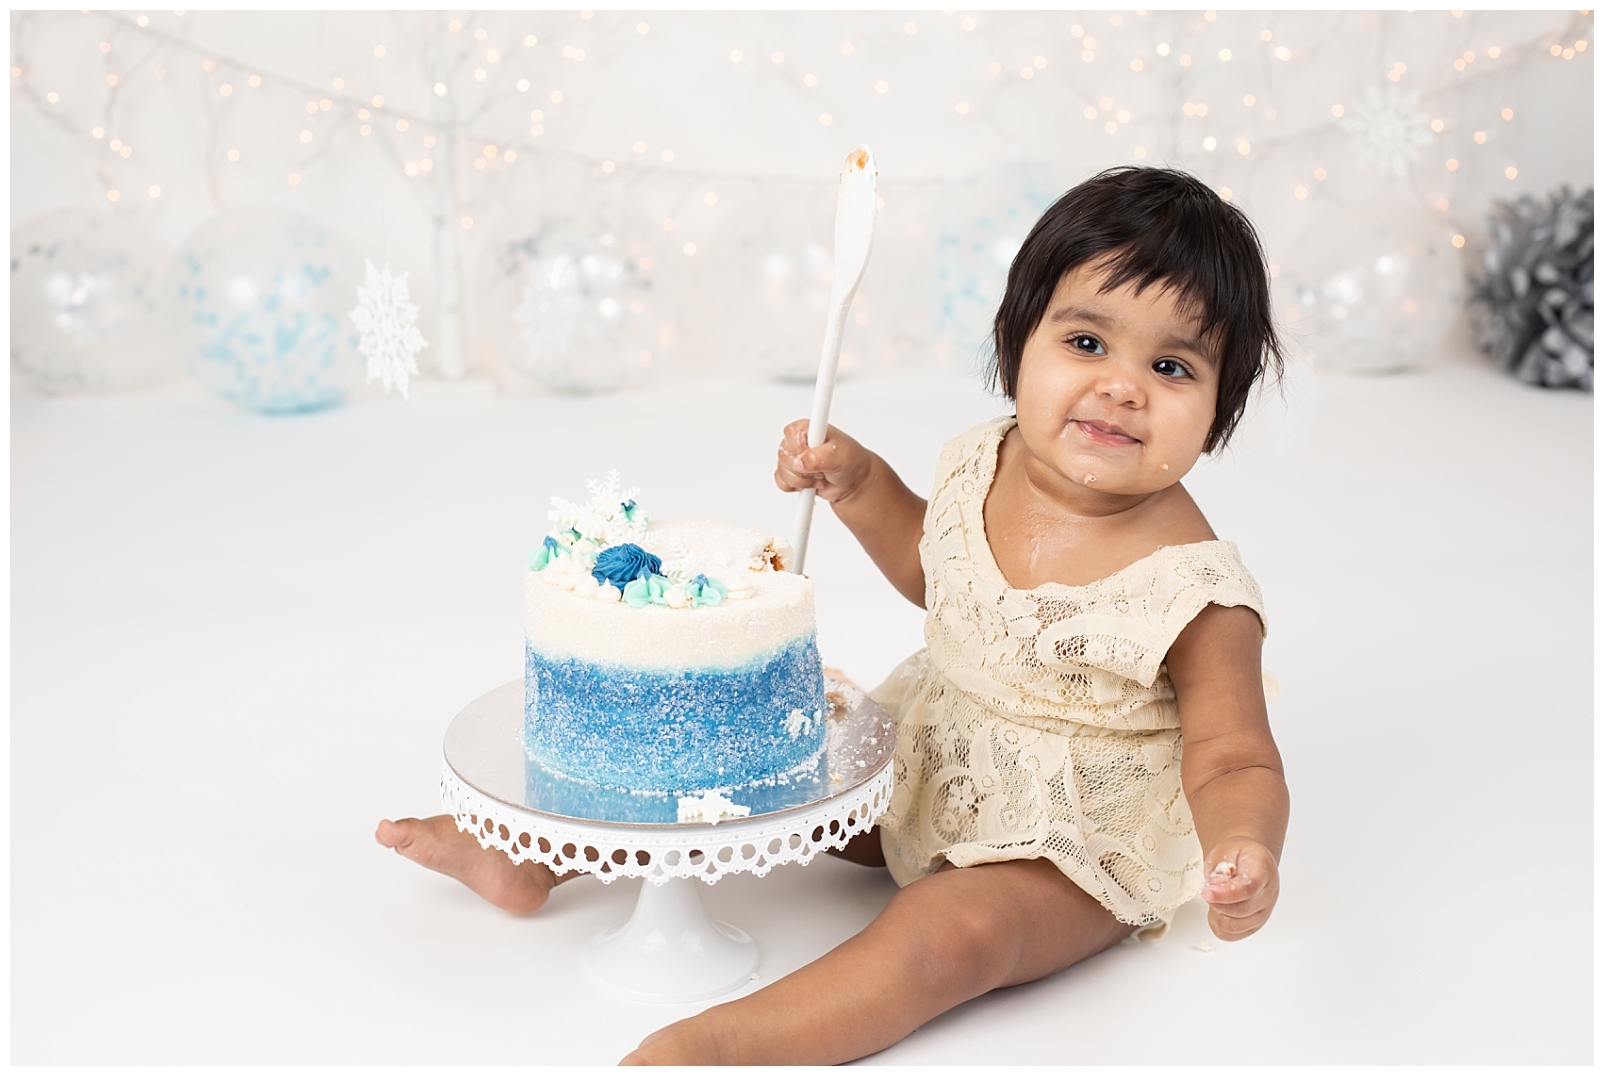 Baby smiling during cake smash